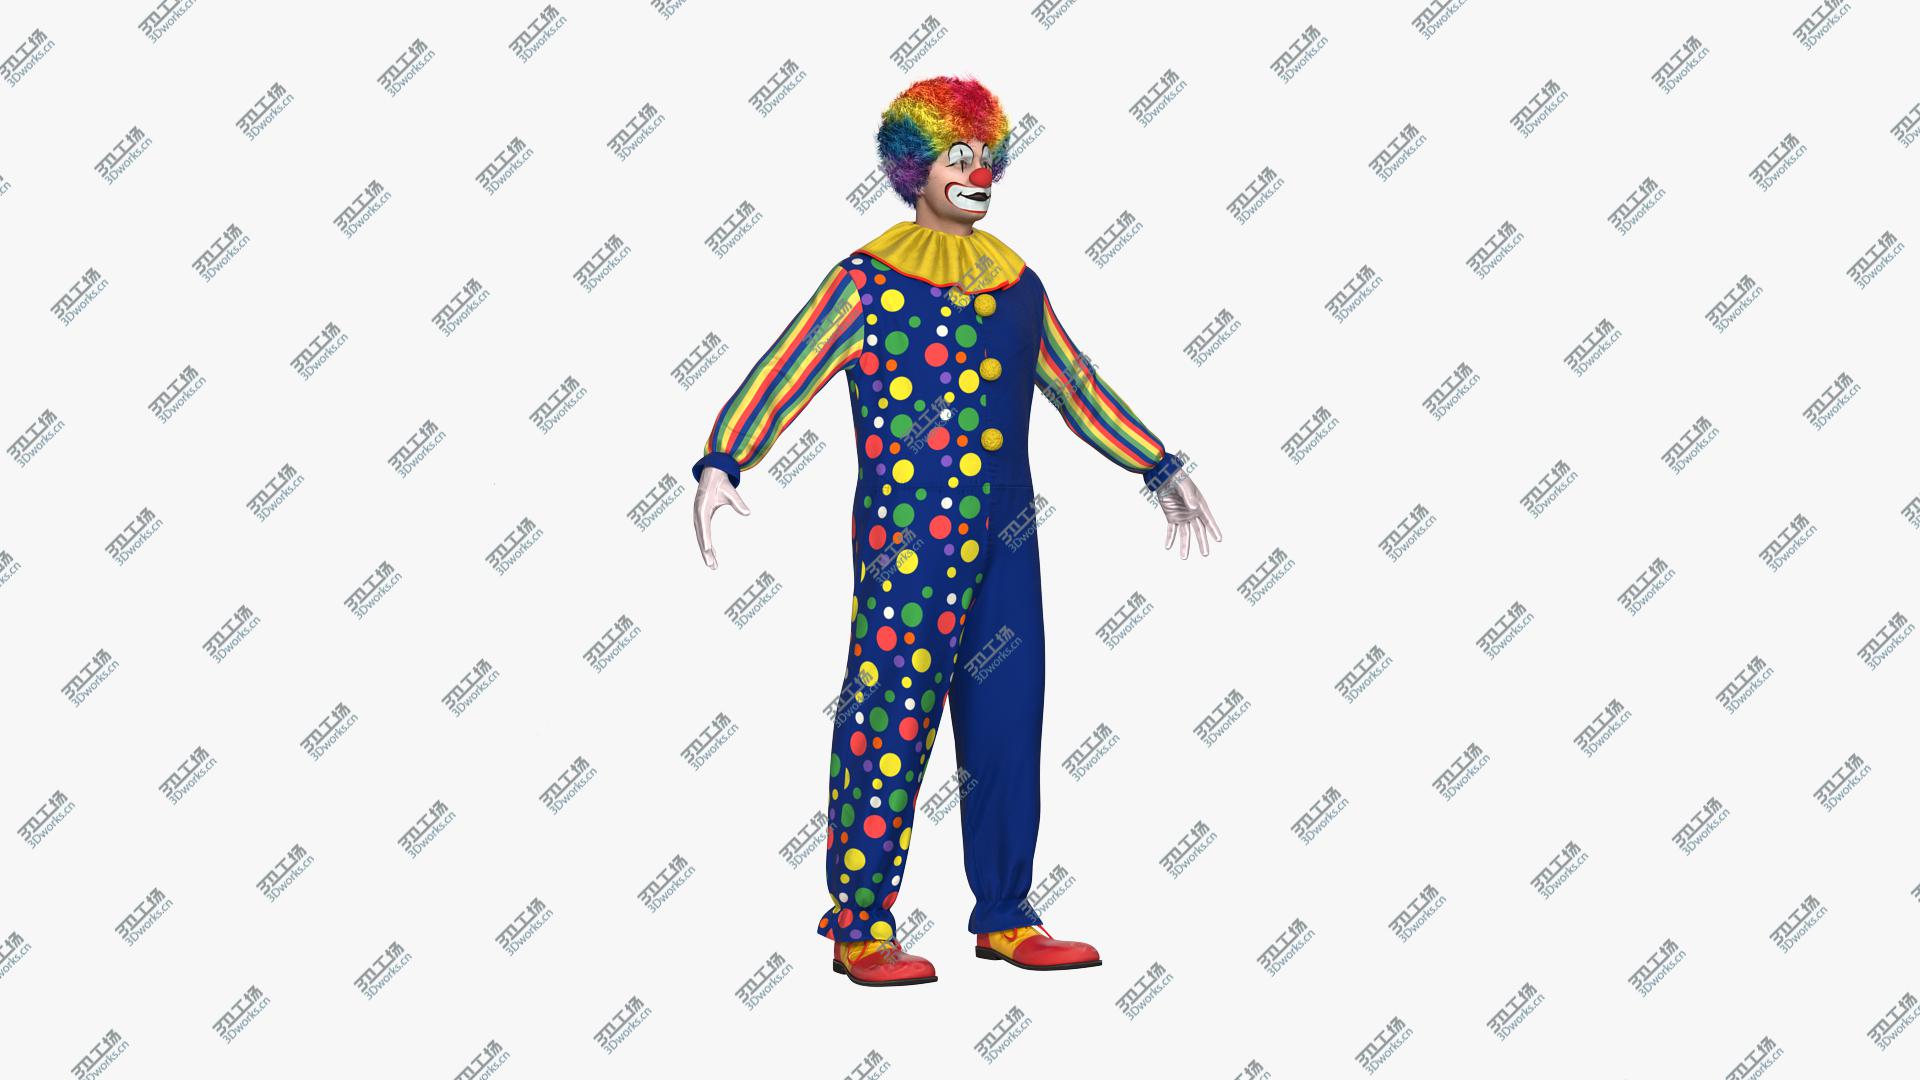 images/goods_img/202104093/3D model Funny Clown Costume Fur/2.jpg